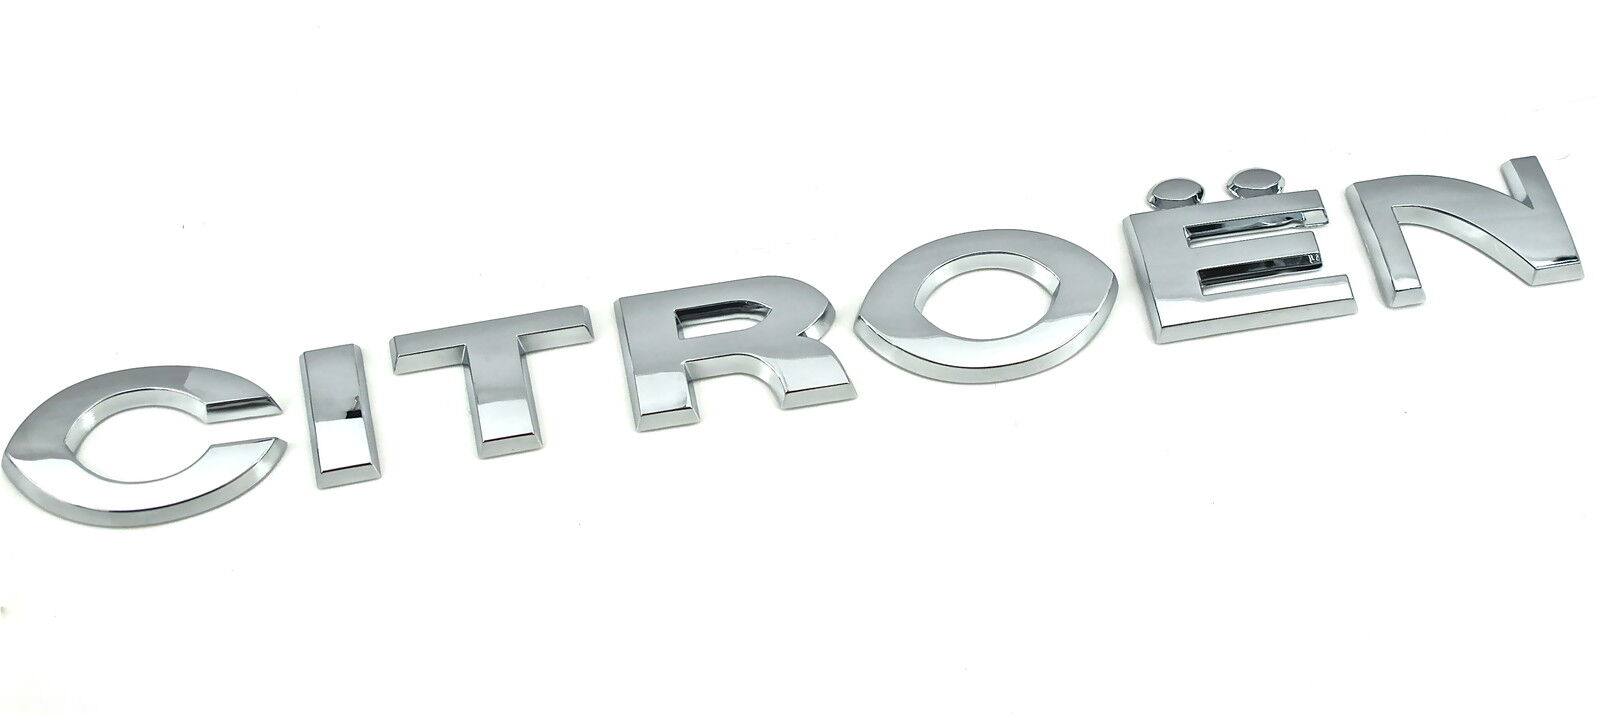 Genuine New CITROEN REAR DOOR BADGE Emblem For Berlingo 2008-2012 Van Box MPV